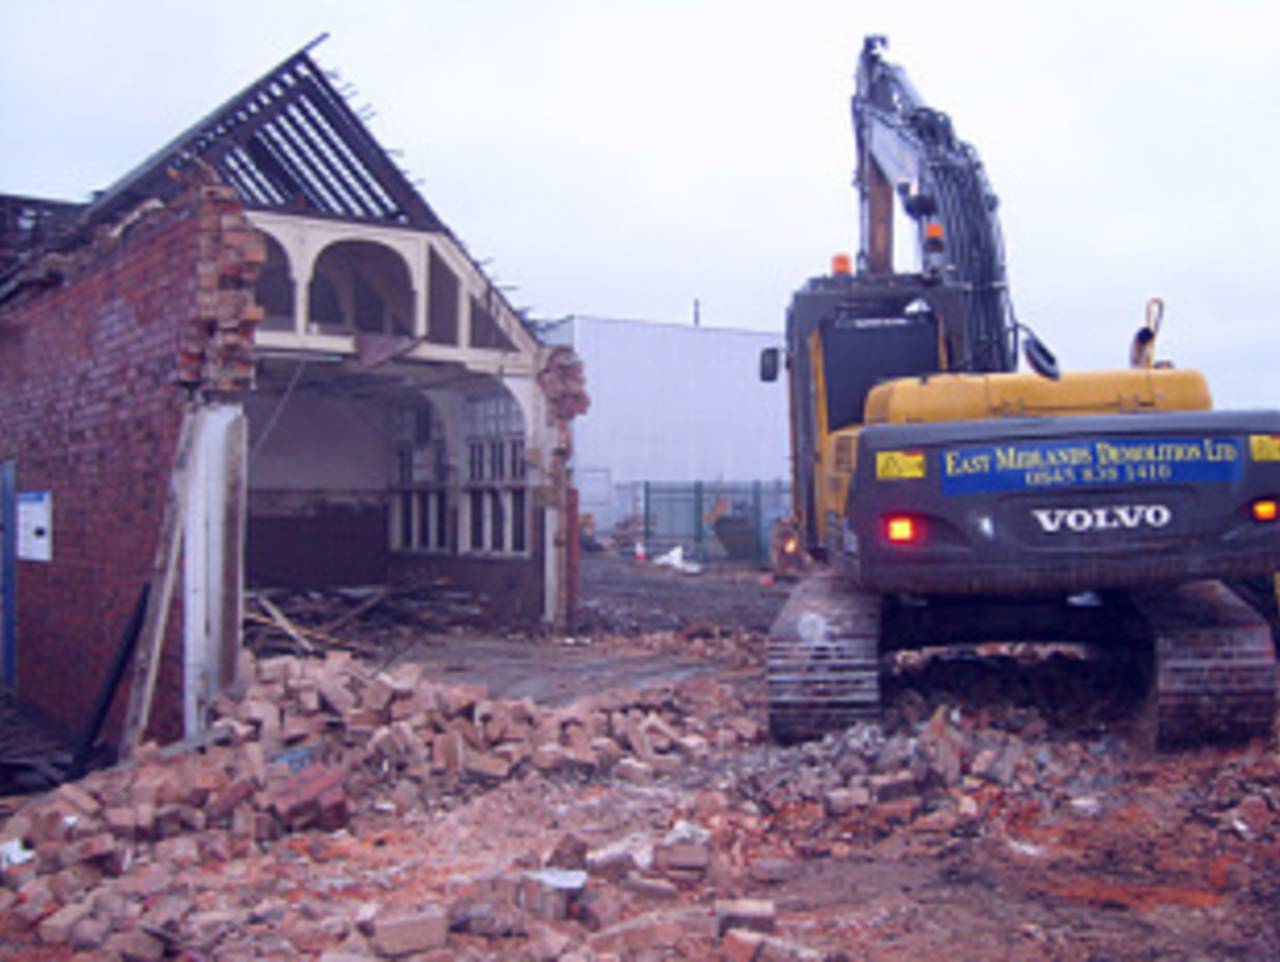 Reconstruction work at Derbyshire's Racecourse Ground began in 2009&nbsp;&nbsp;&bull;&nbsp;&nbsp;Derbyshire CCC